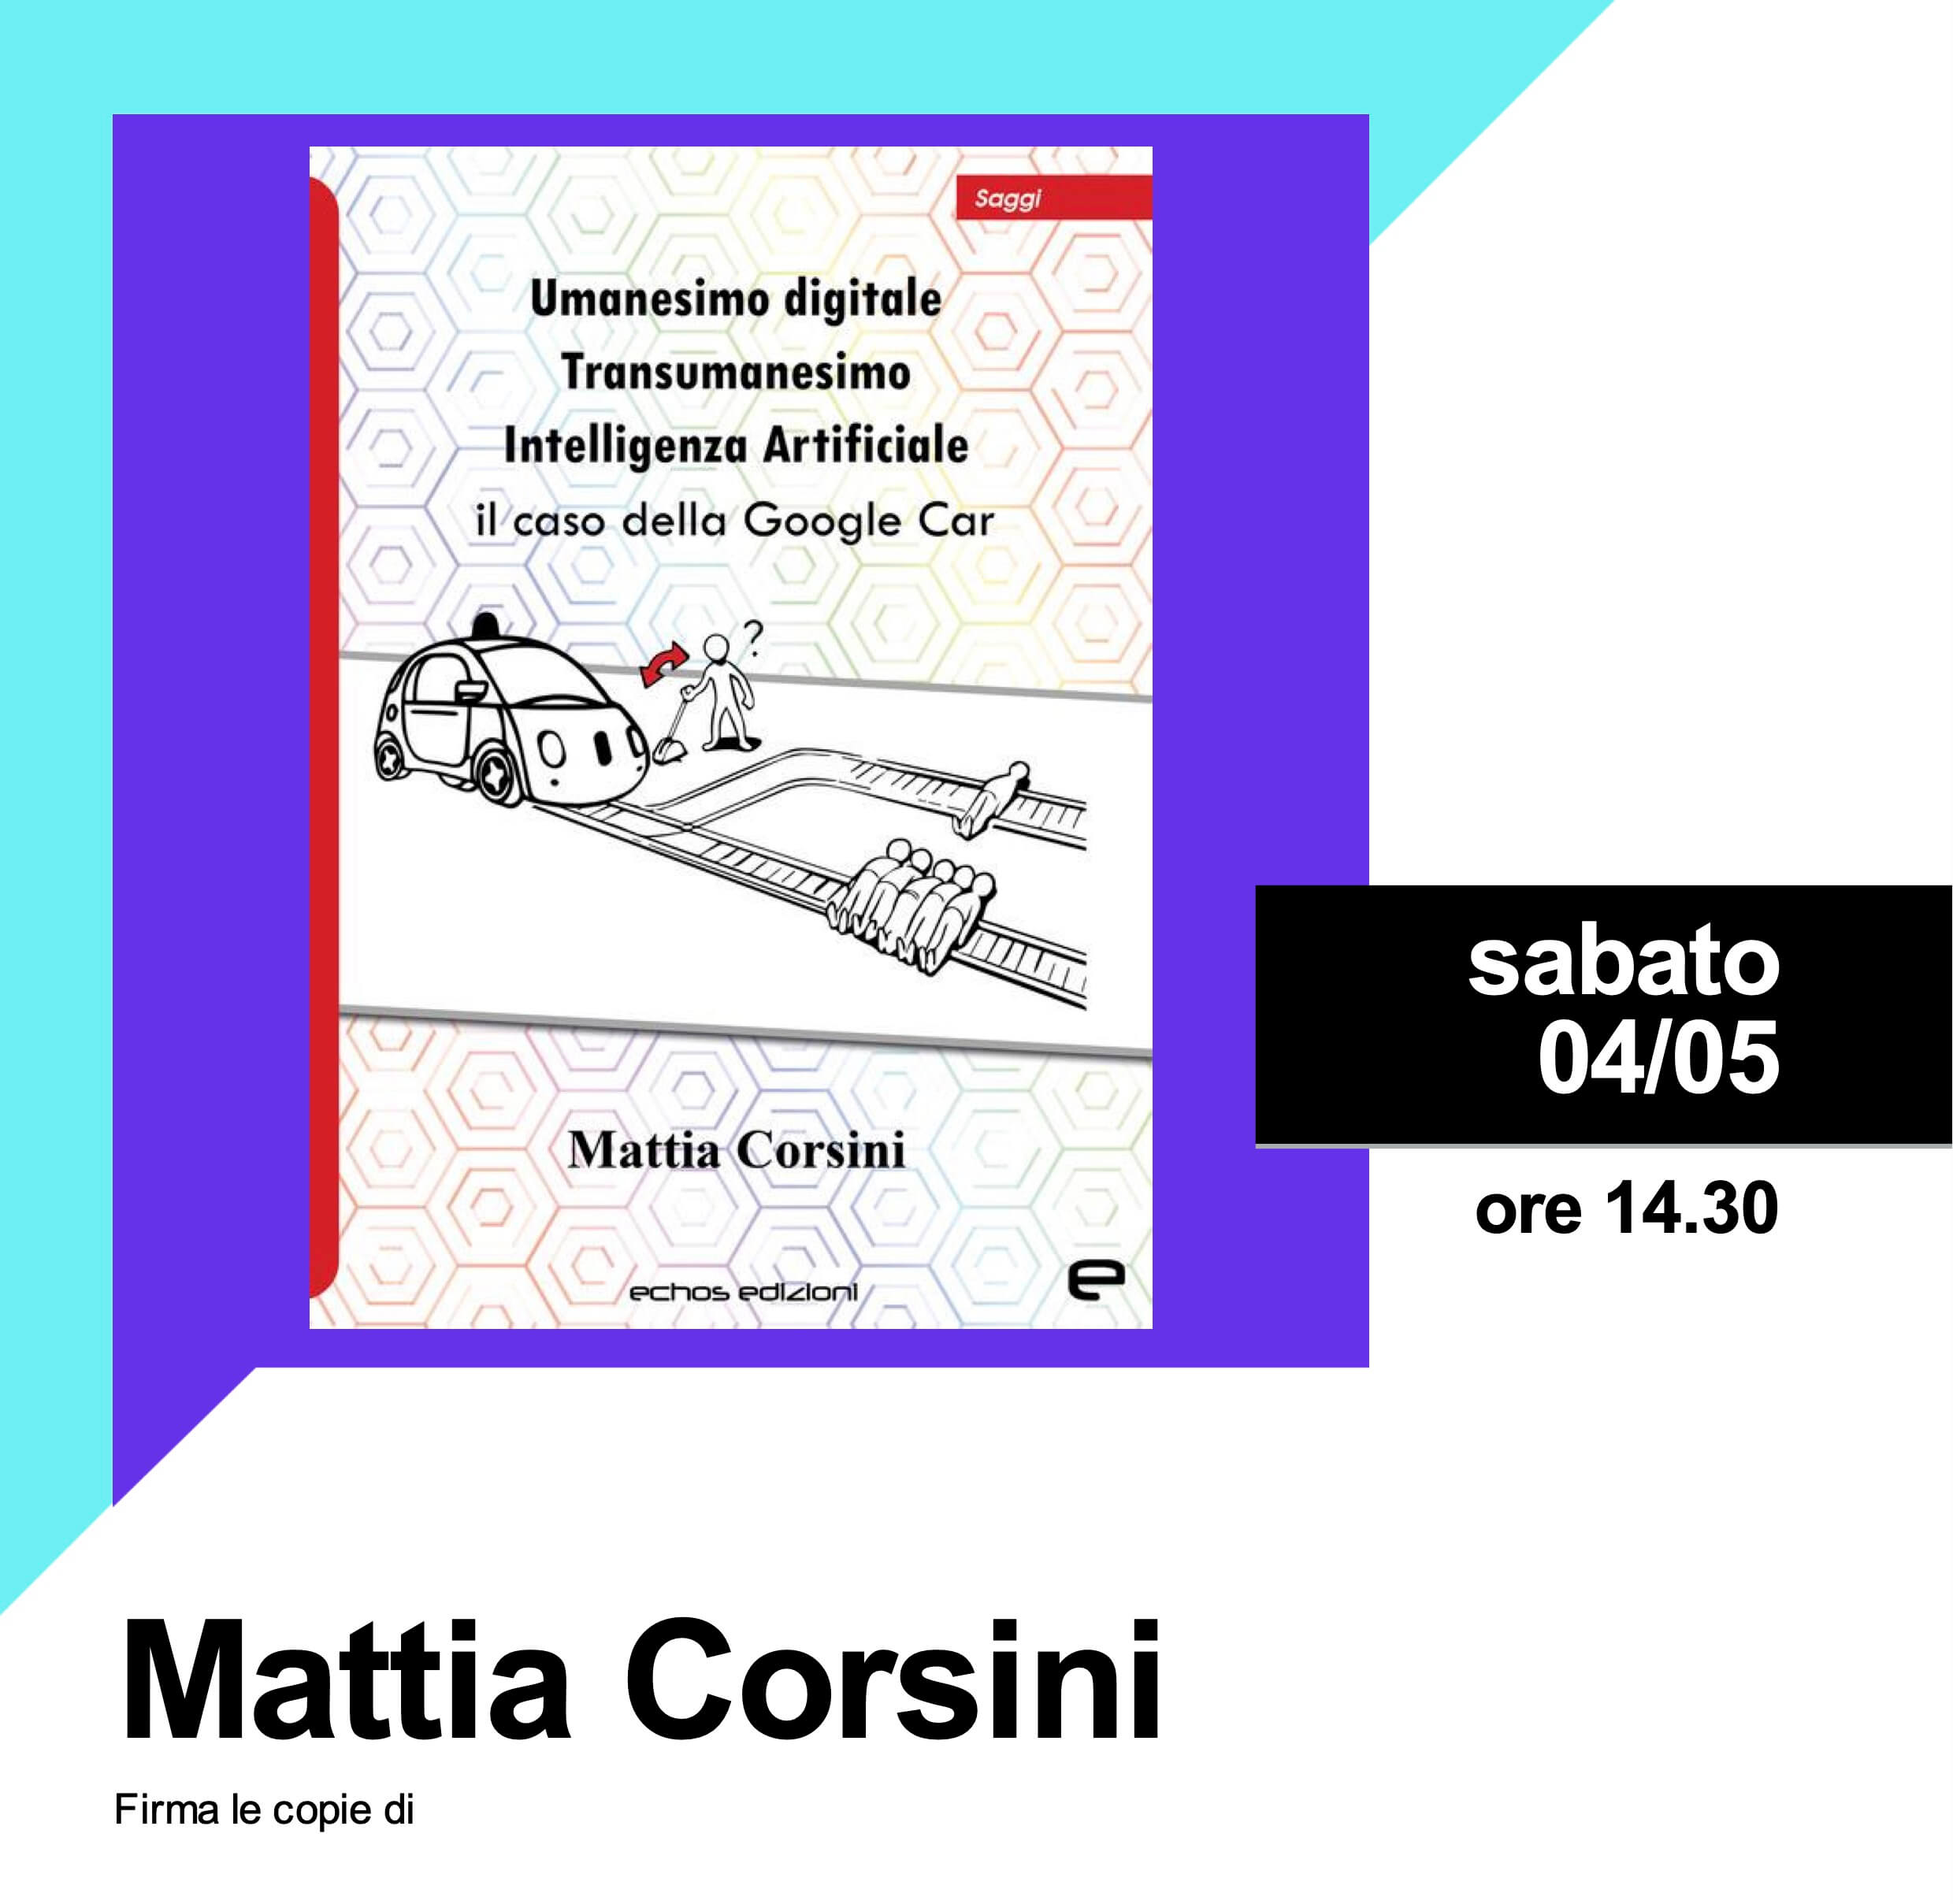 Firmacopie con Mattia Corsini